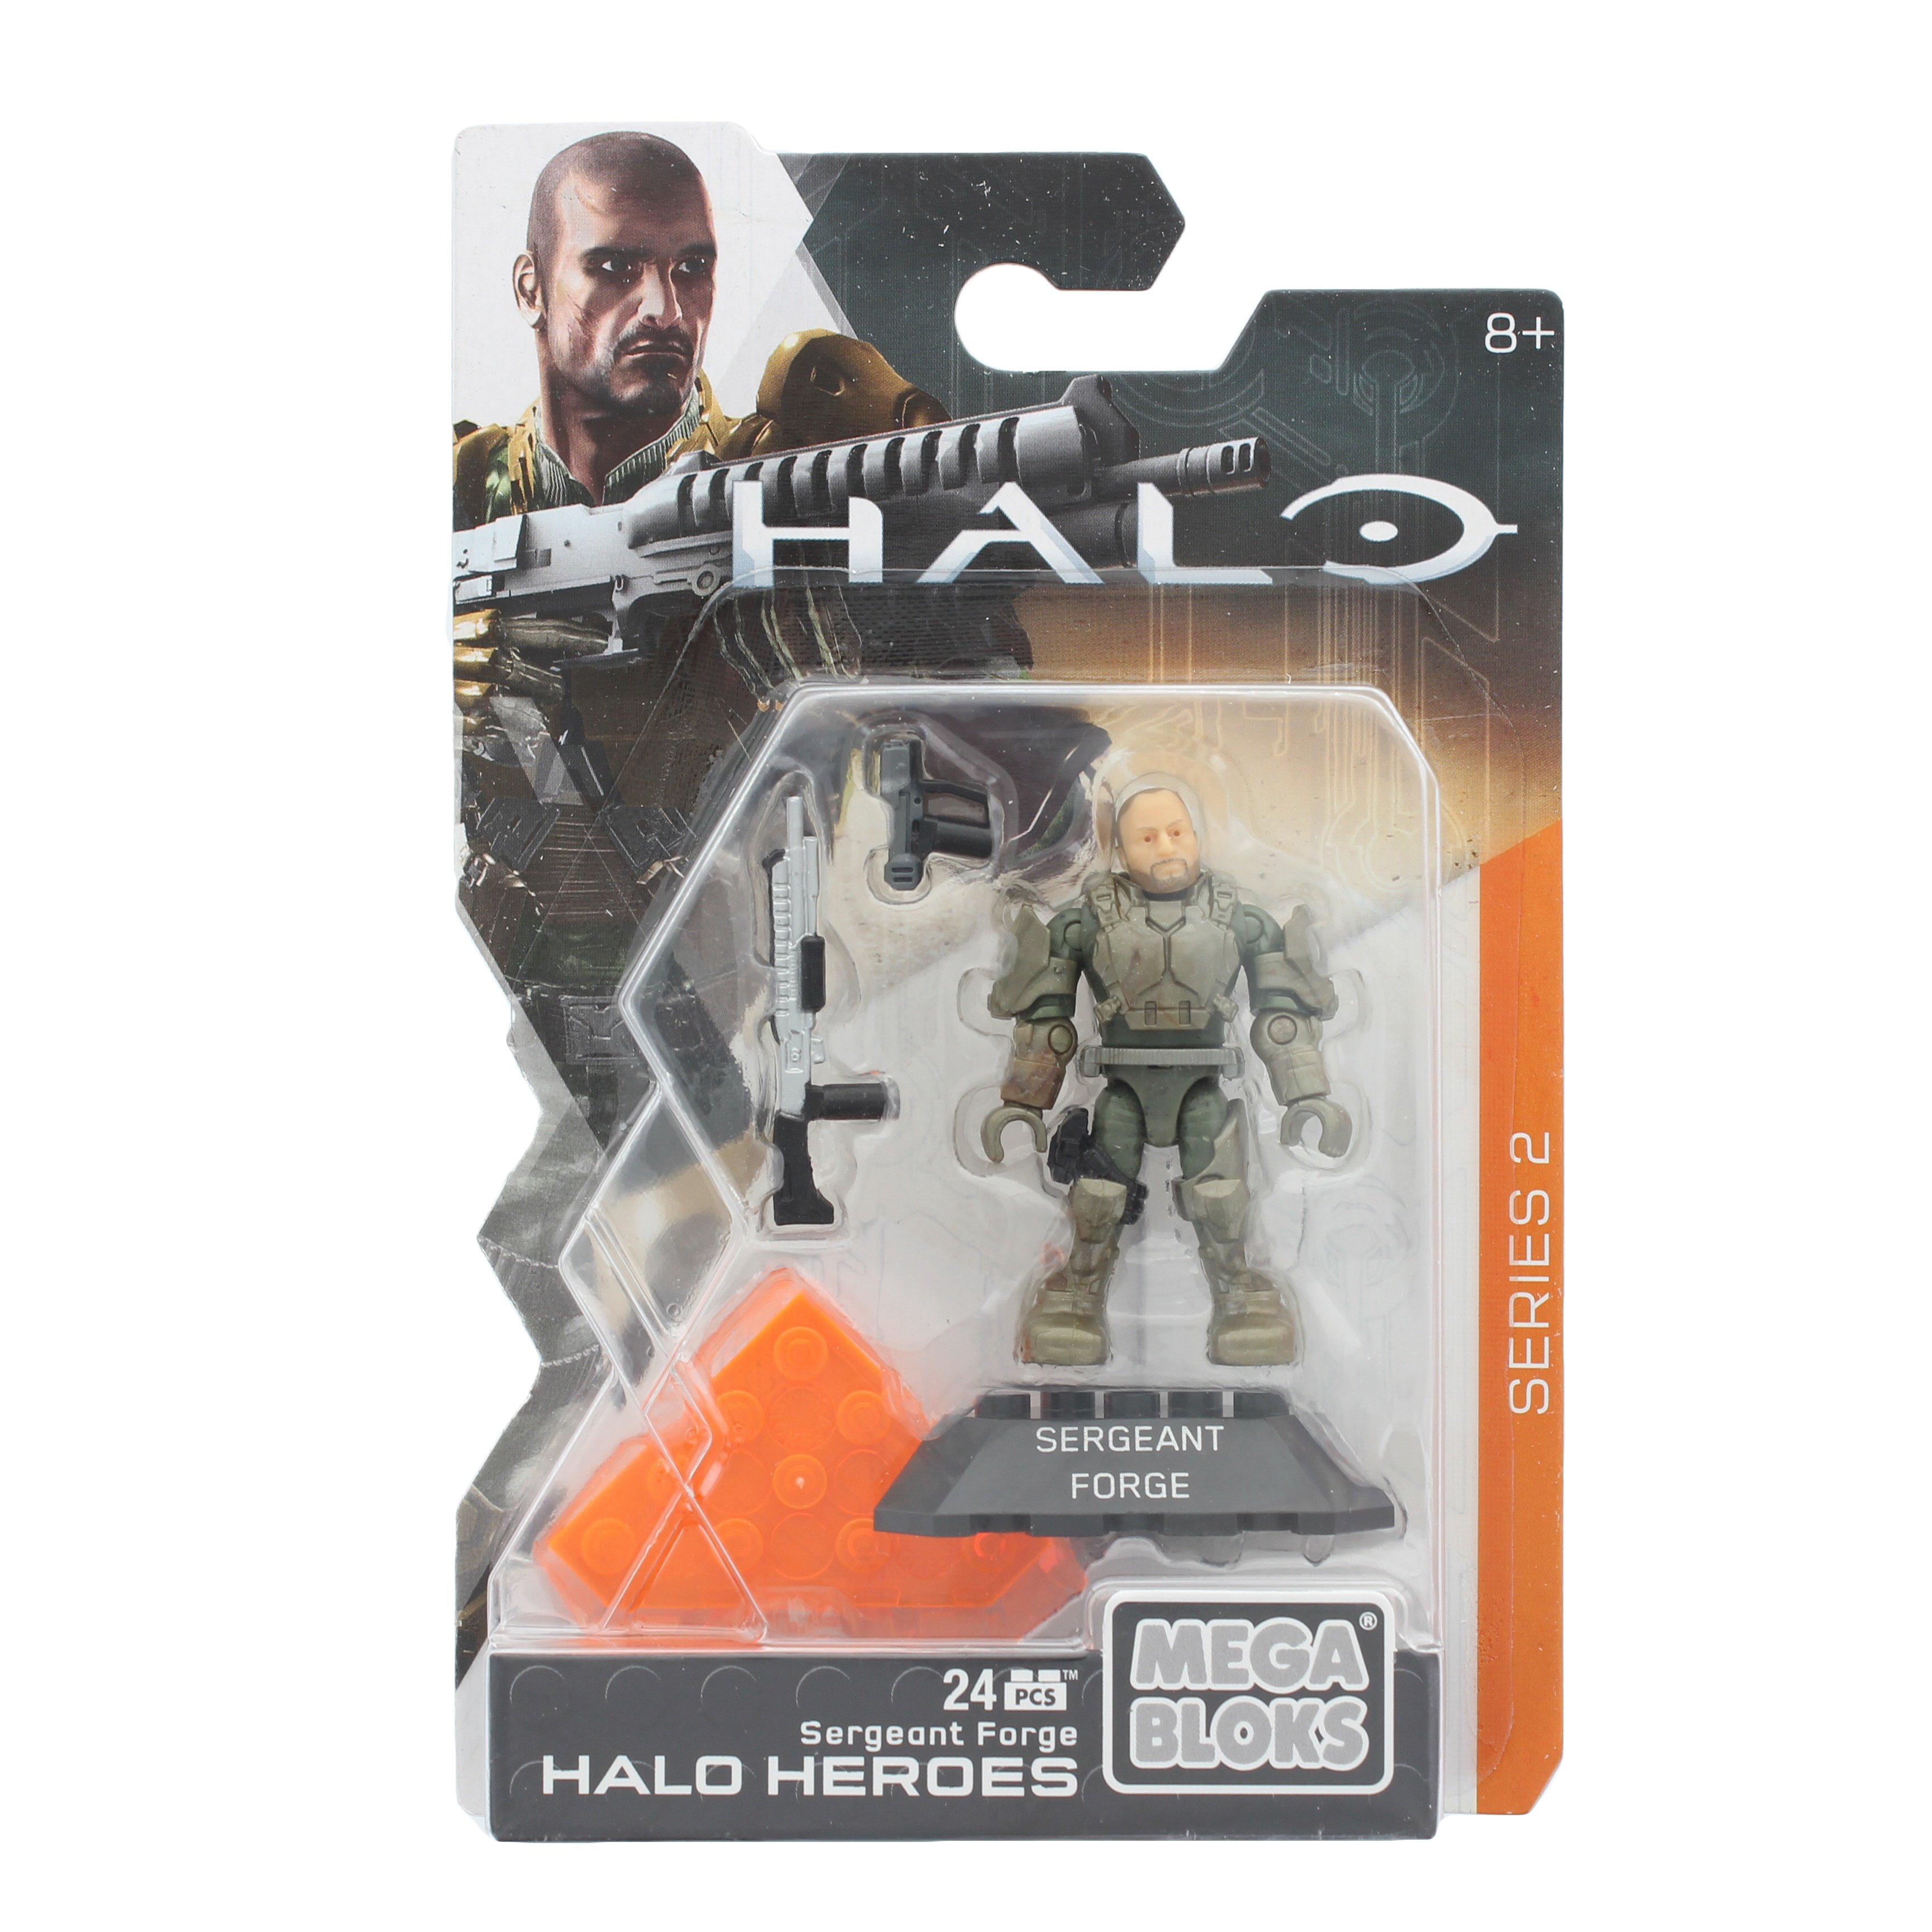 Mega Bloks Halo Heroes Series 2 Sergeant Forge Figure Set DPJ77 NISB